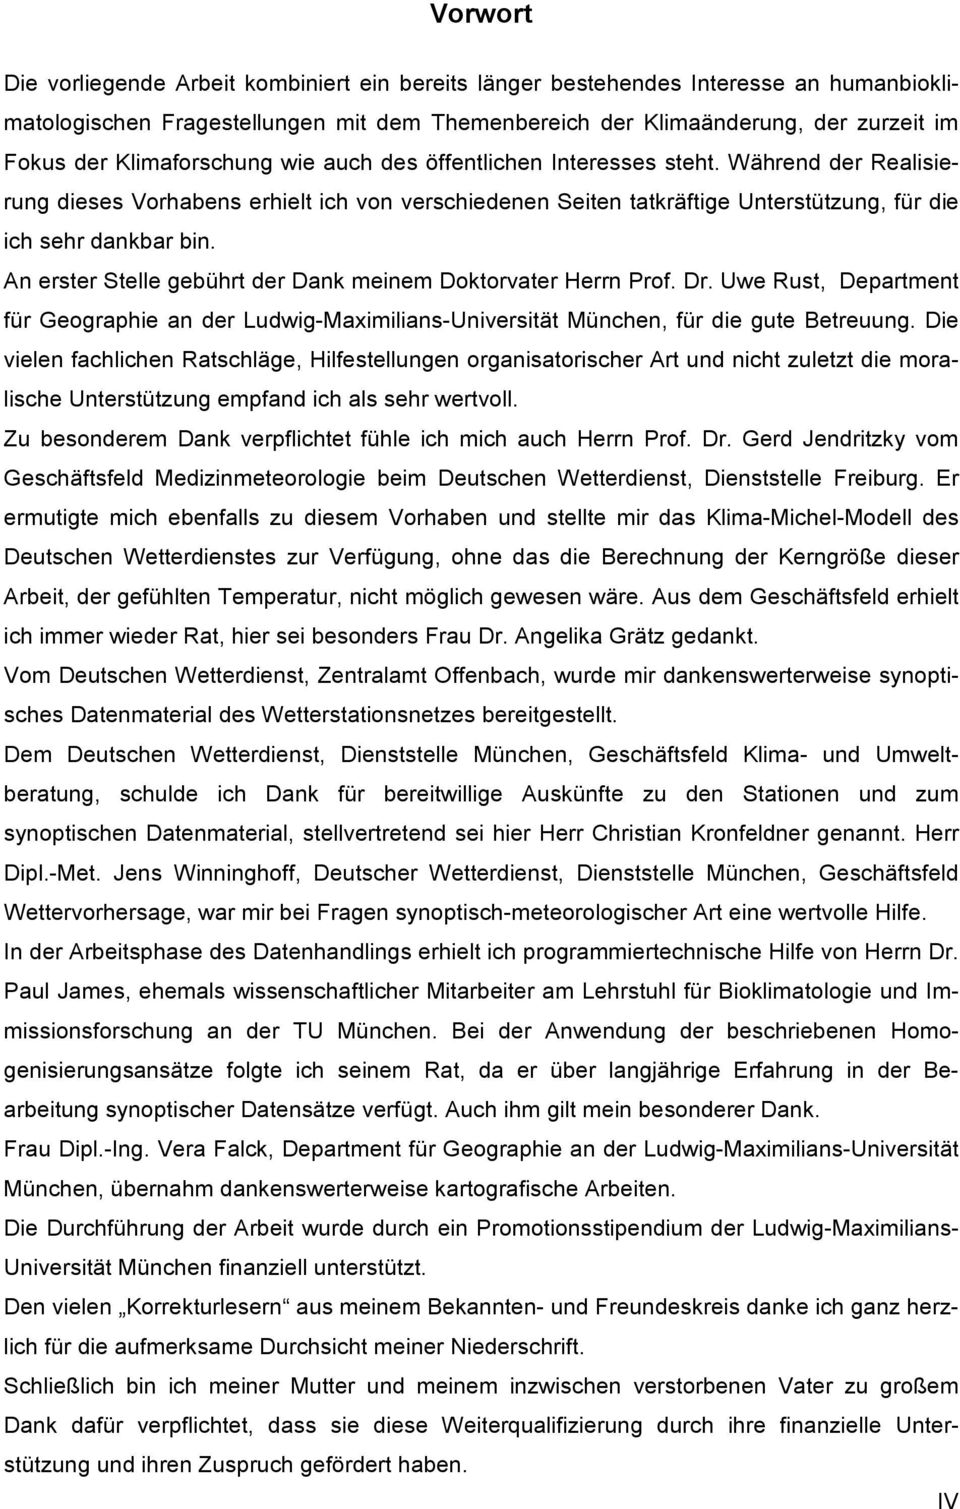 An erster Stelle gebührt der Dank meinem Doktorvater Herrn Prof. Dr. Uwe Rust, Department für Geographie an der Ludwig-Maximilians-Universität München, für die gute Betreuung.